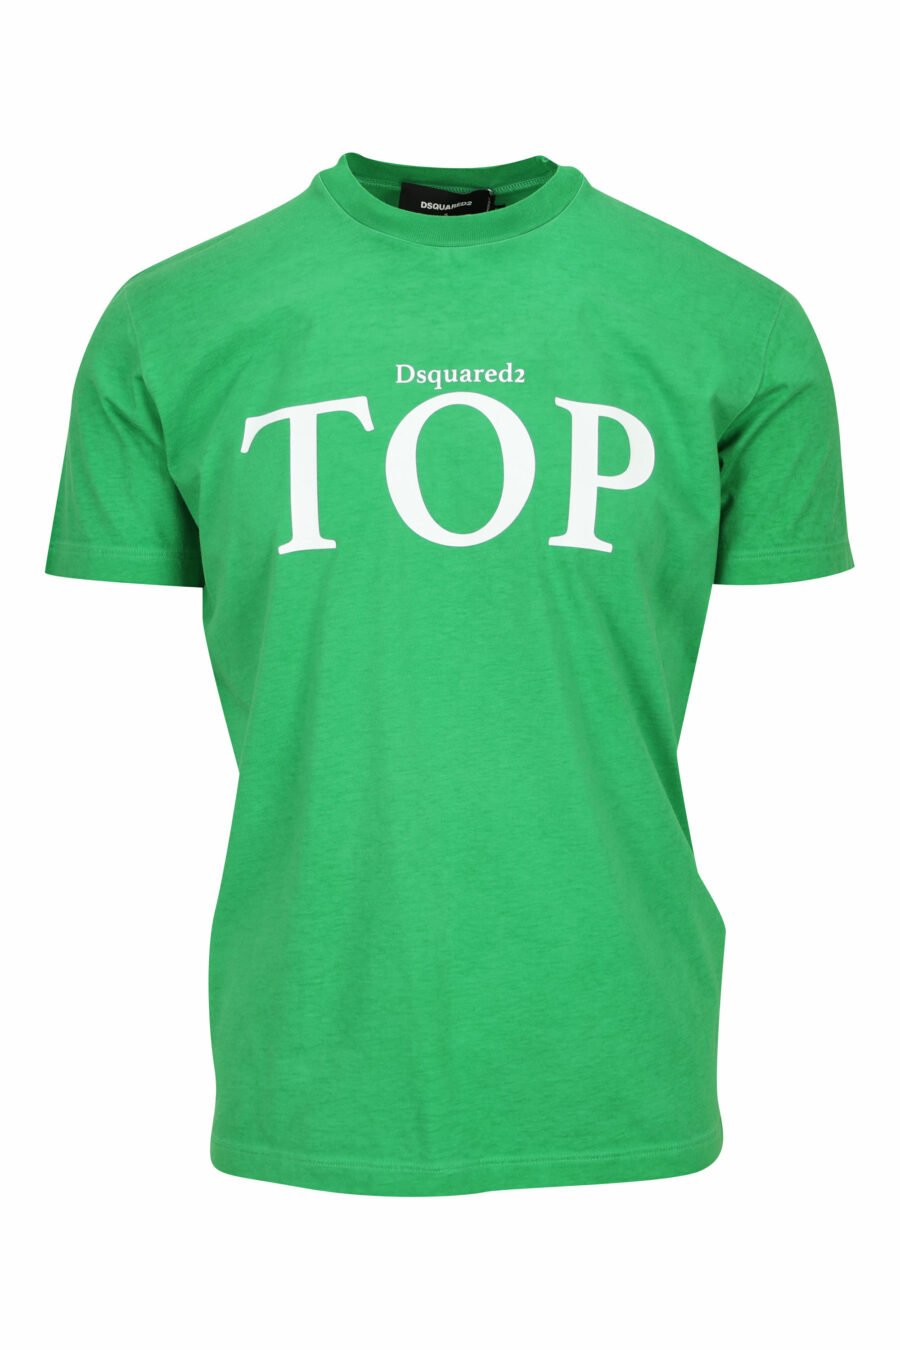 T-shirt vert avec maxi top - 8054148449322